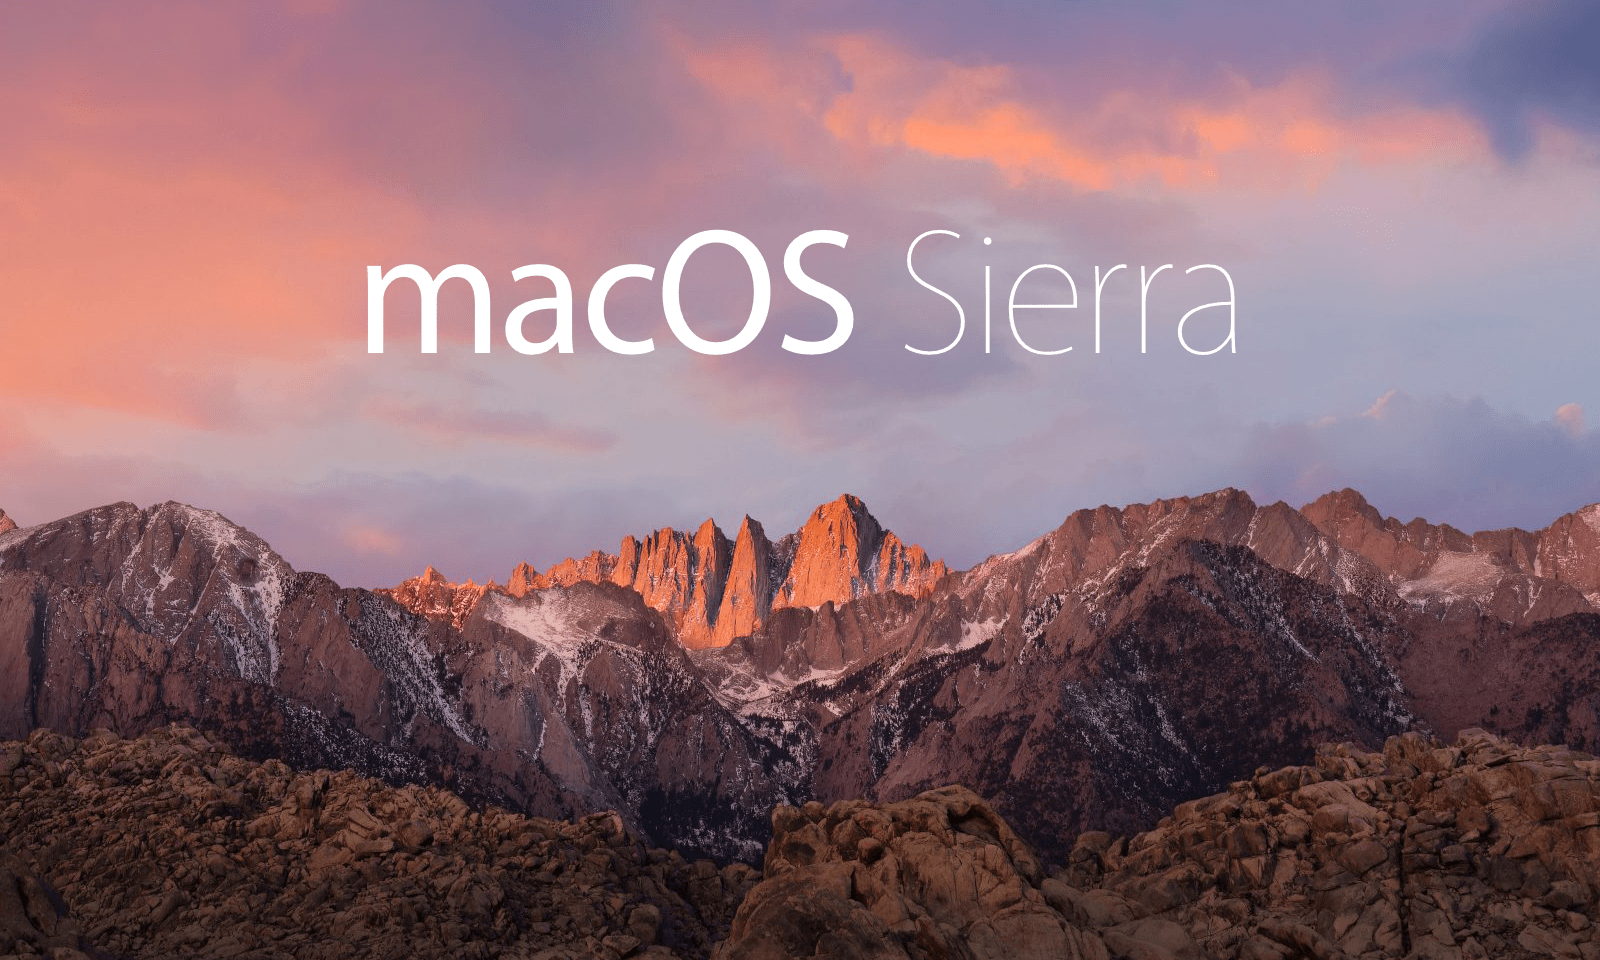 Mac os sierra review